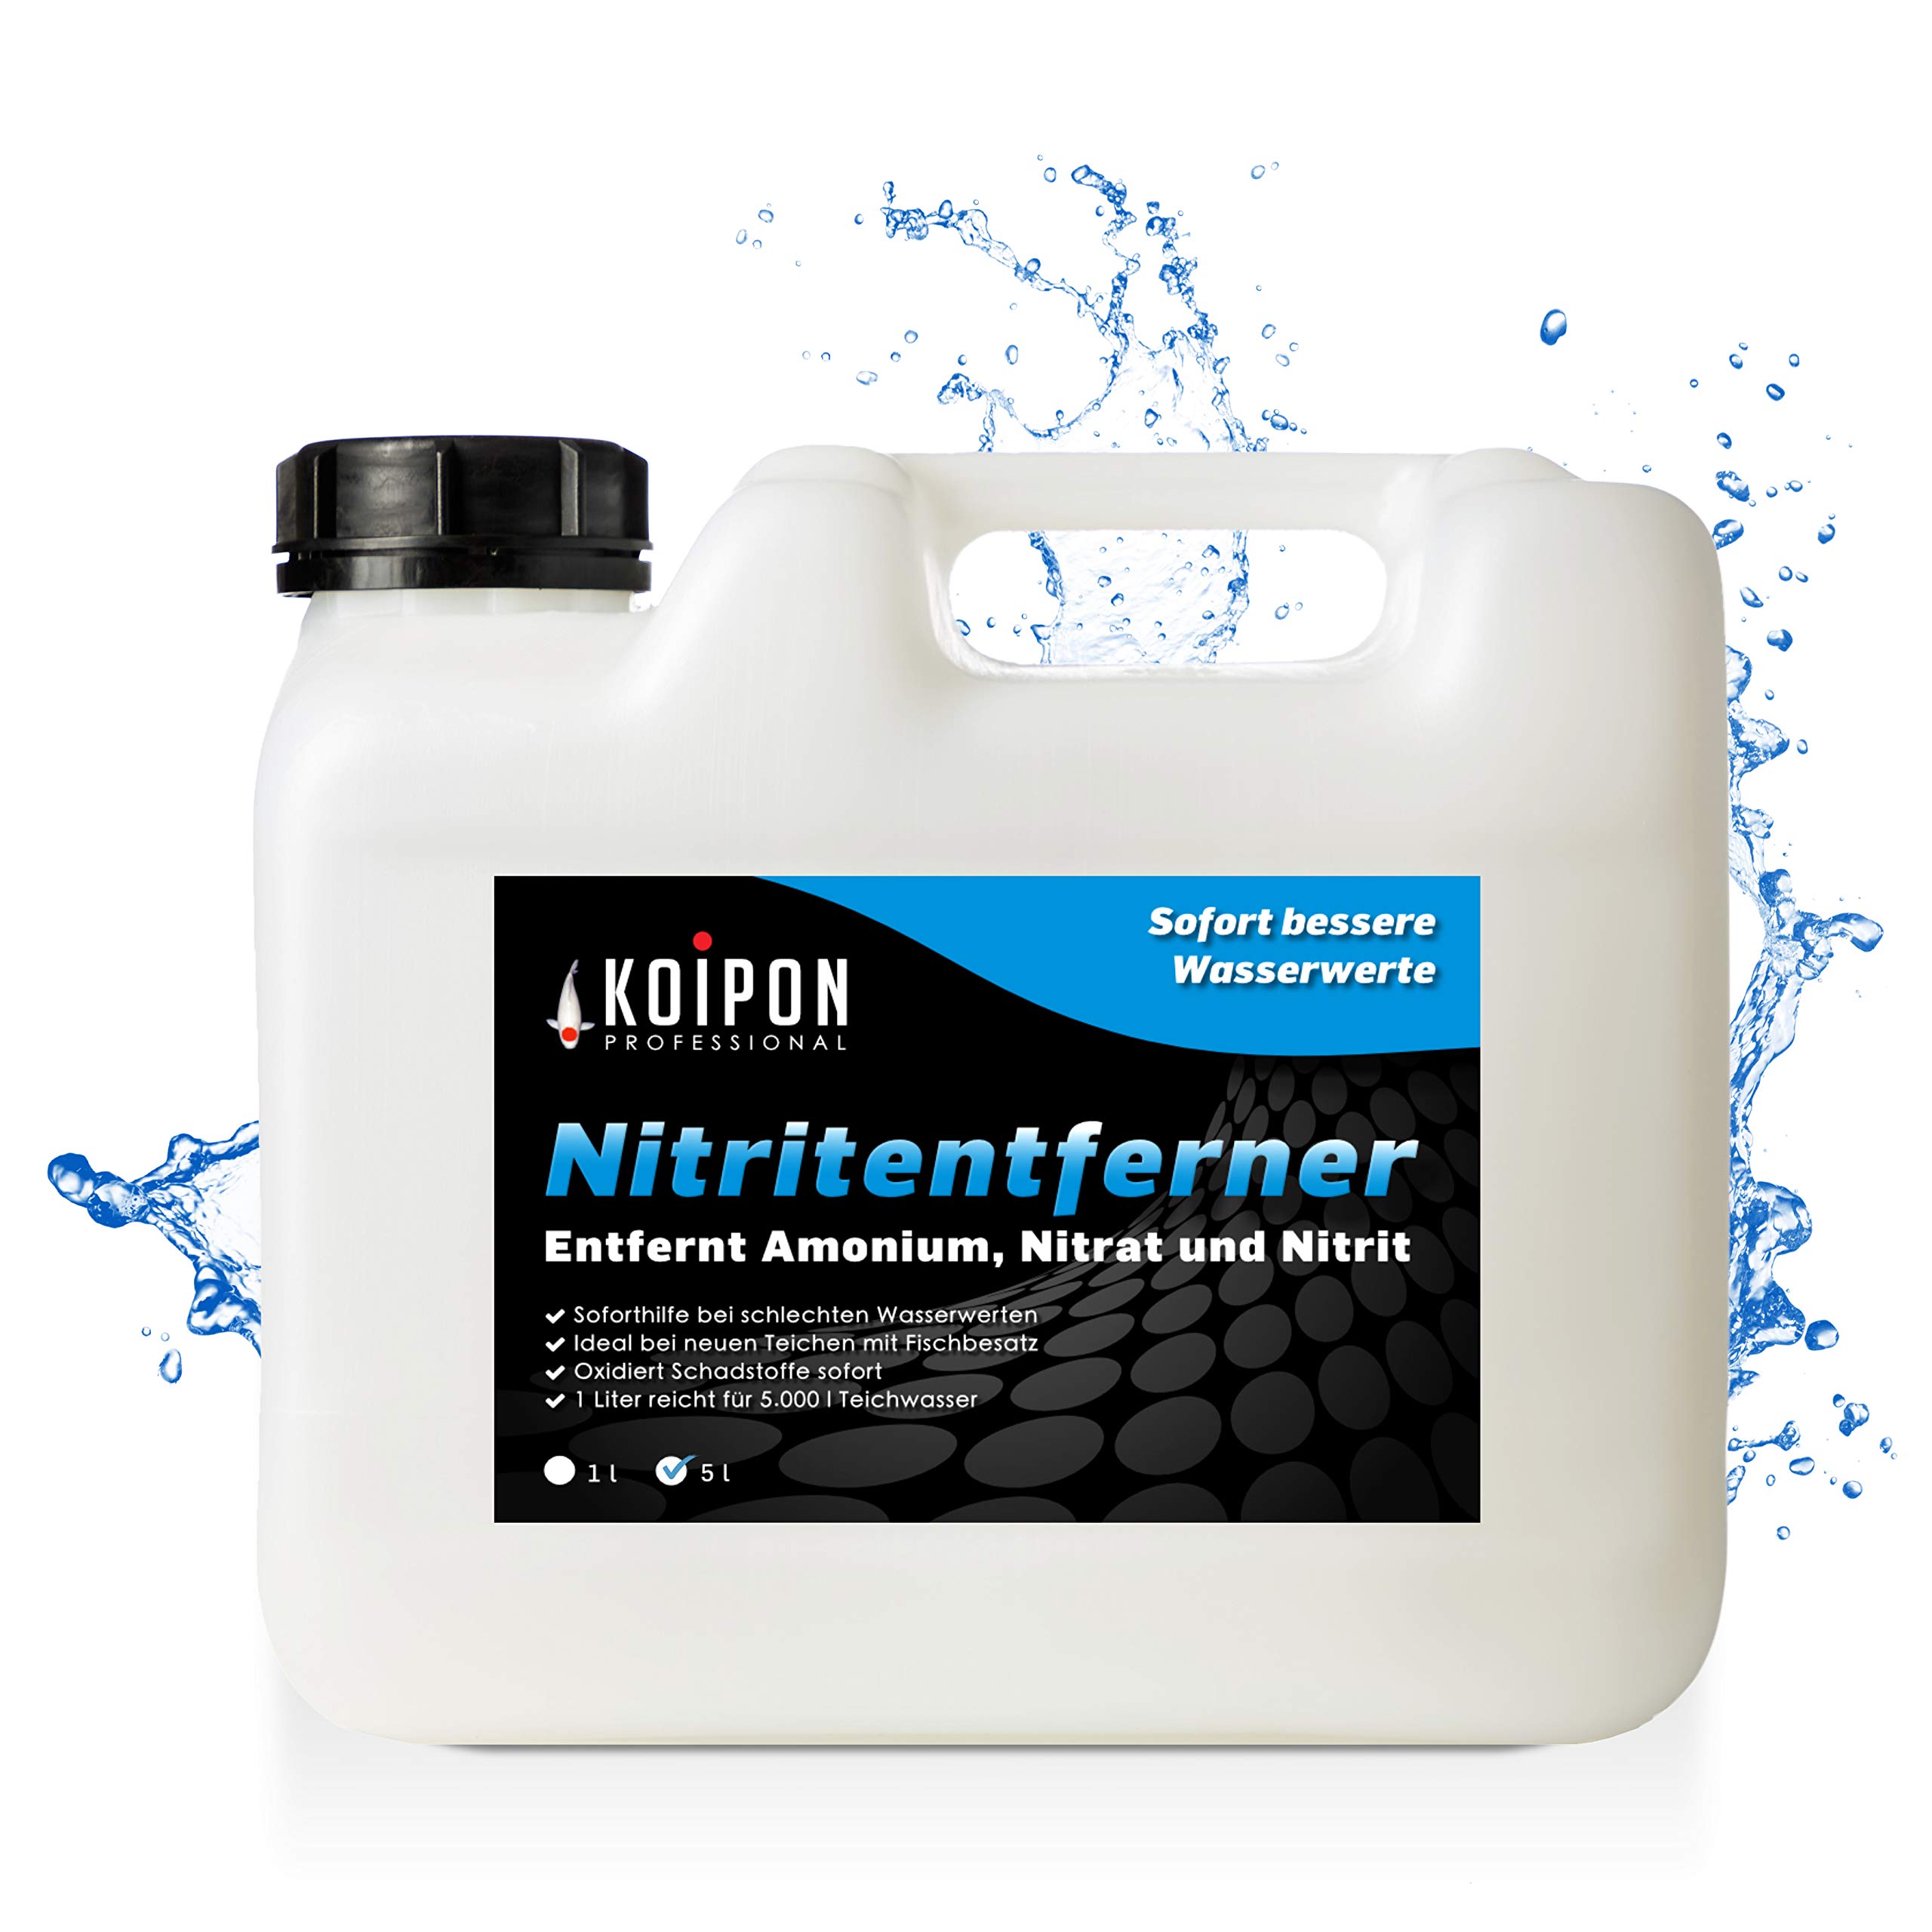 KOIPON Nitritentferner 5L | Entfernt Ammonium, Nitrit und Nitrat | Soforthilfe für bessere Wasserwerte im Gartenteich